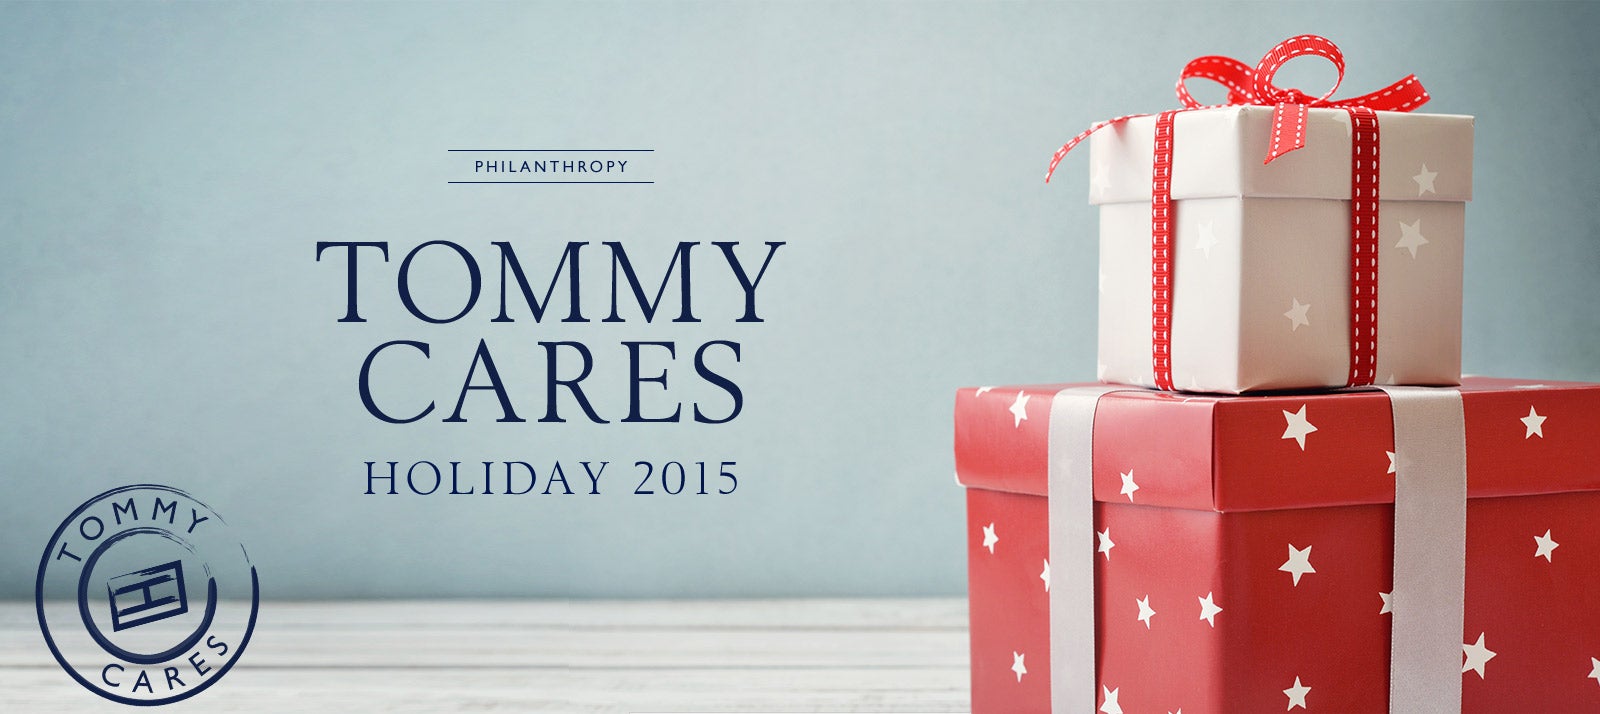 Philanthropy Cares | Tommy Hilfiger USA